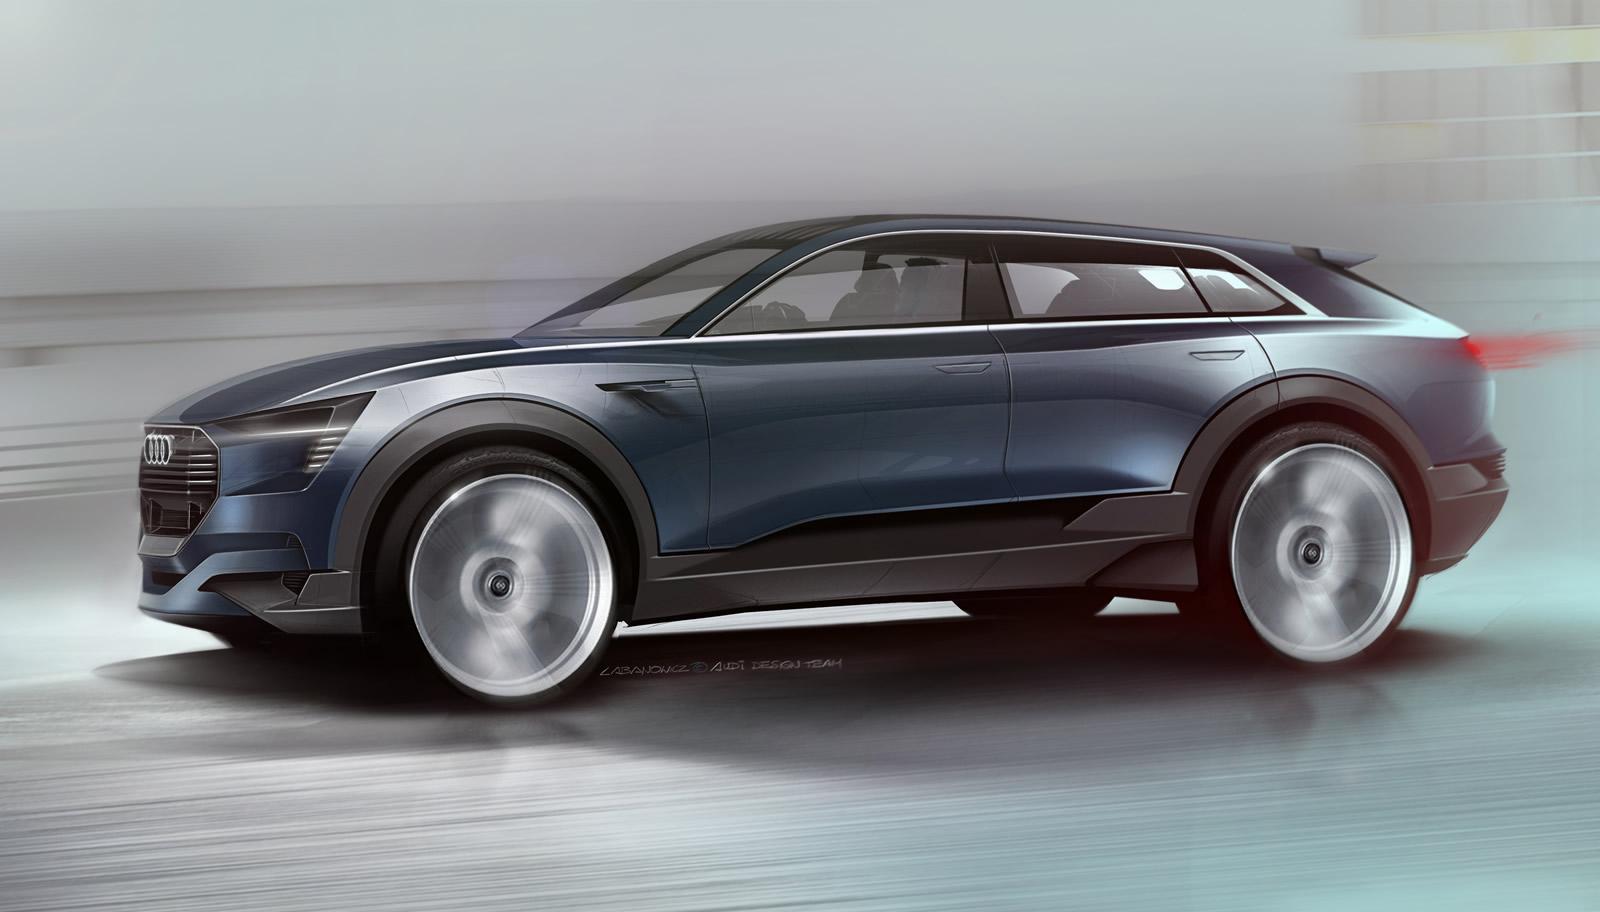 Audi etron Concept Design Sketches  Car Body Design